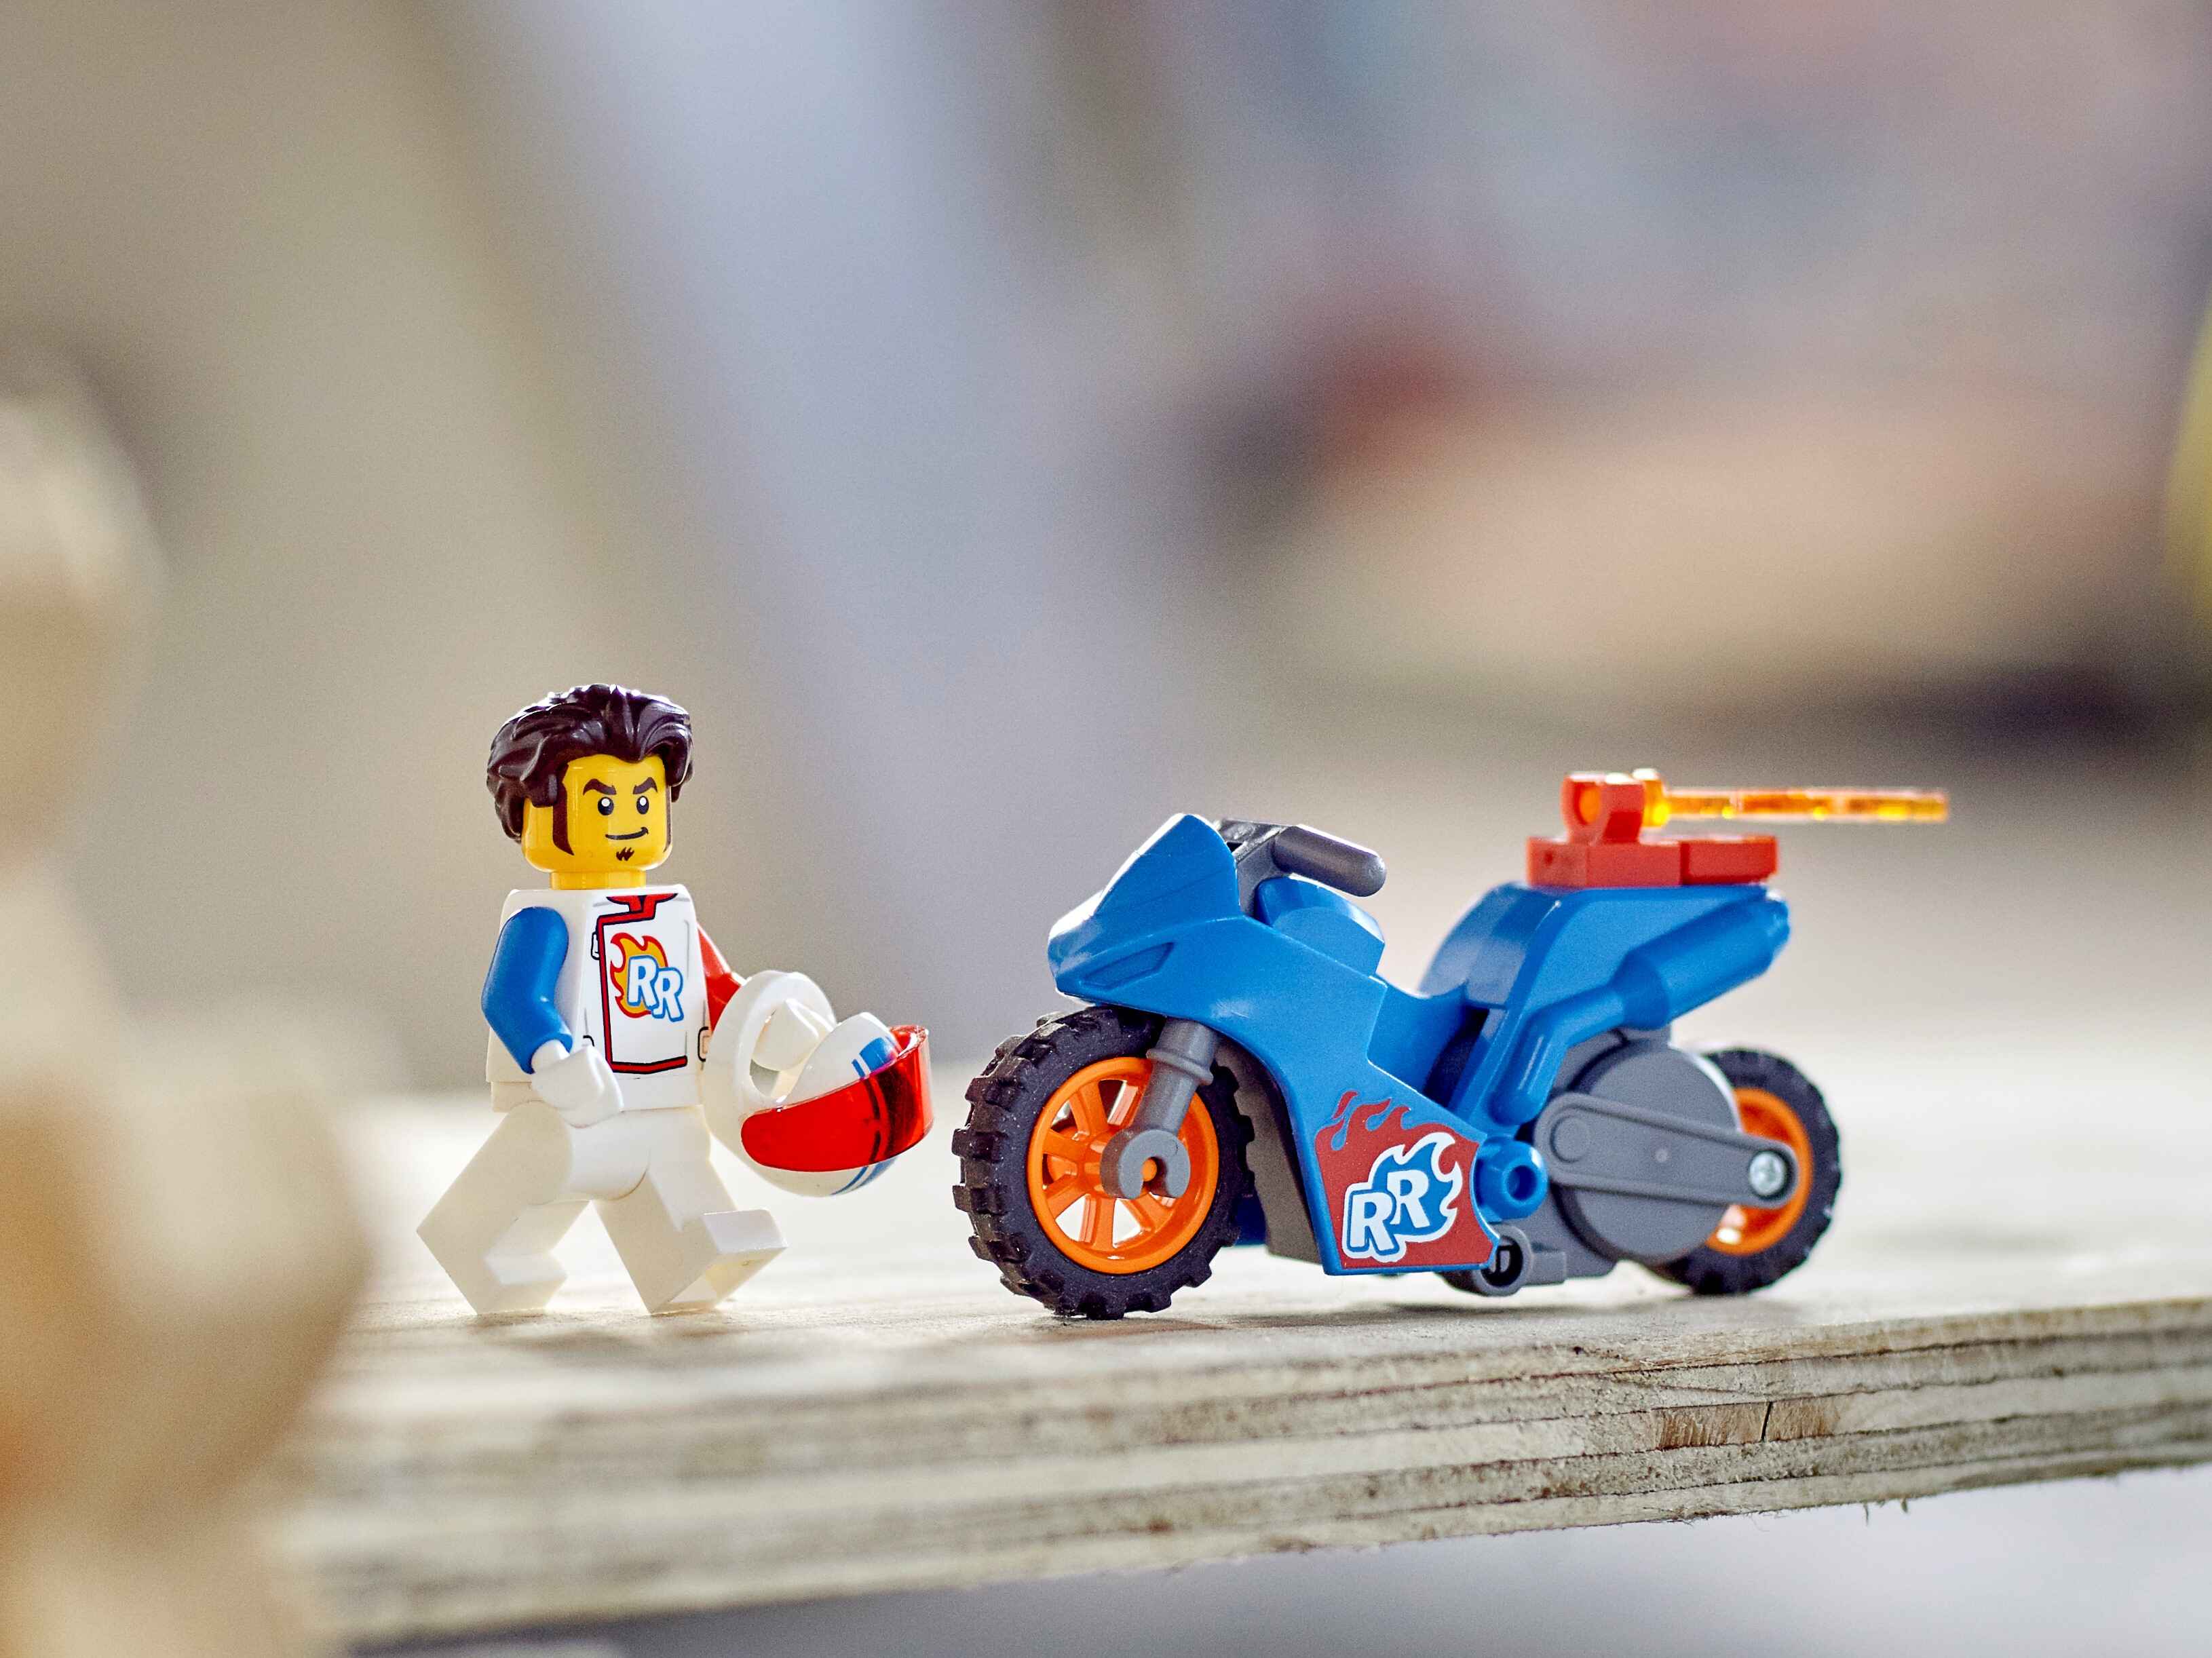 LEGO 60298 City Stuntz Raketen-Stuntbike, Set, schwungradbetriebenes Motorrad